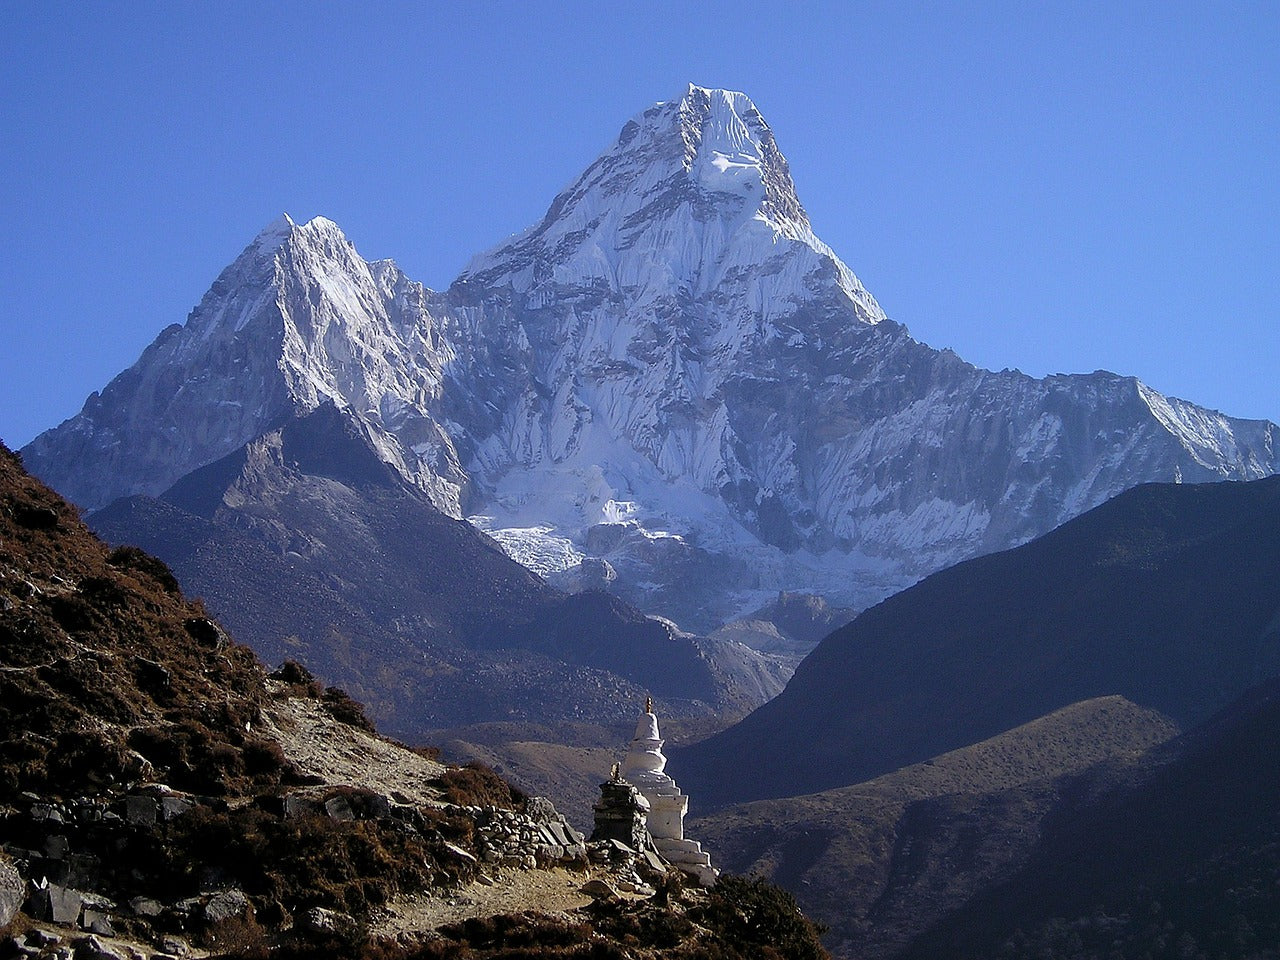 KRISTALLSALZ aus den Ausläufern des Himalaya, Steine